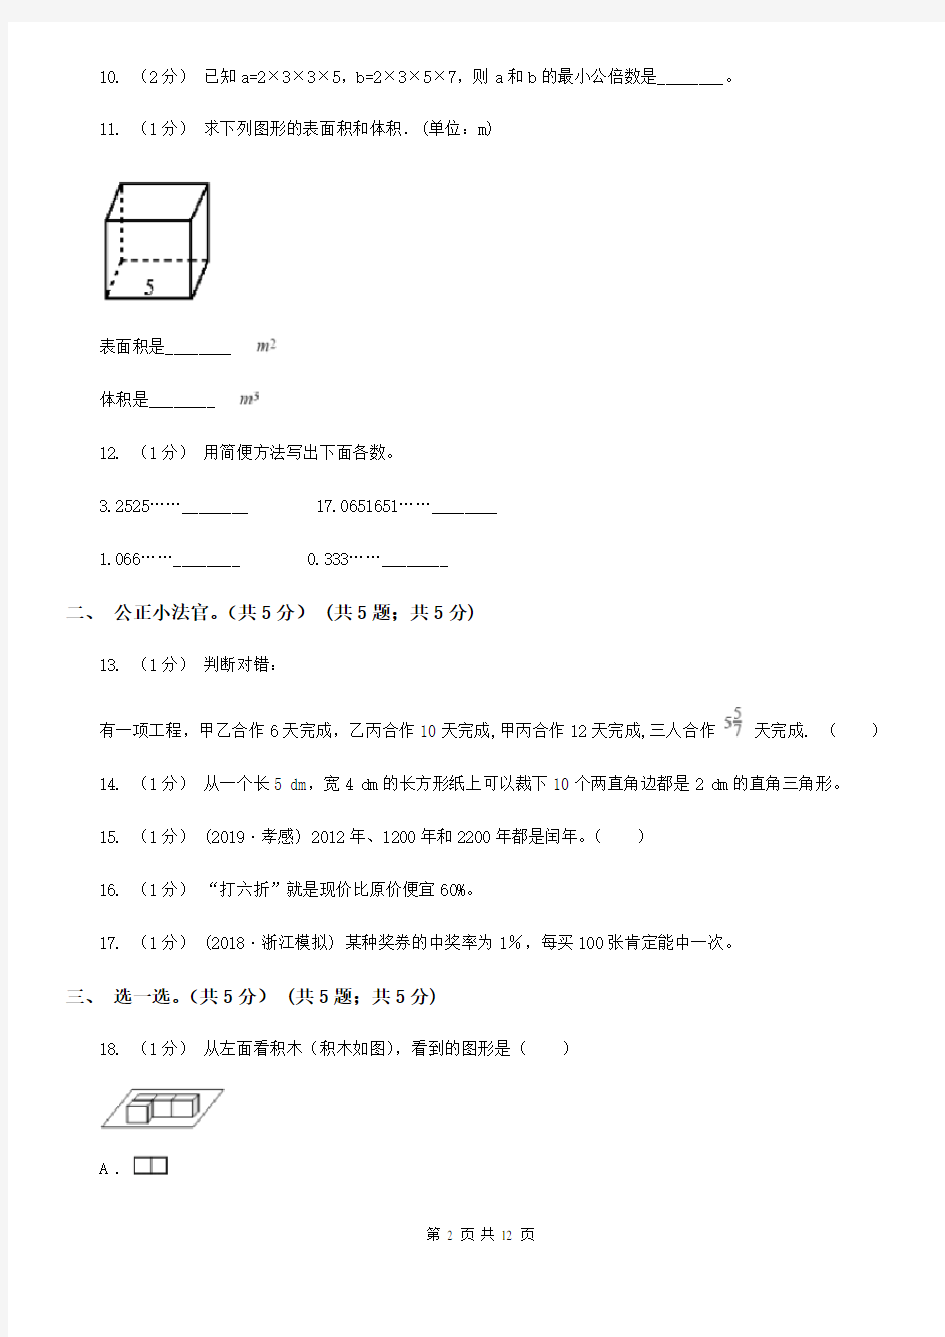 河南省洛阳市2021版小升初数学试卷(II)卷